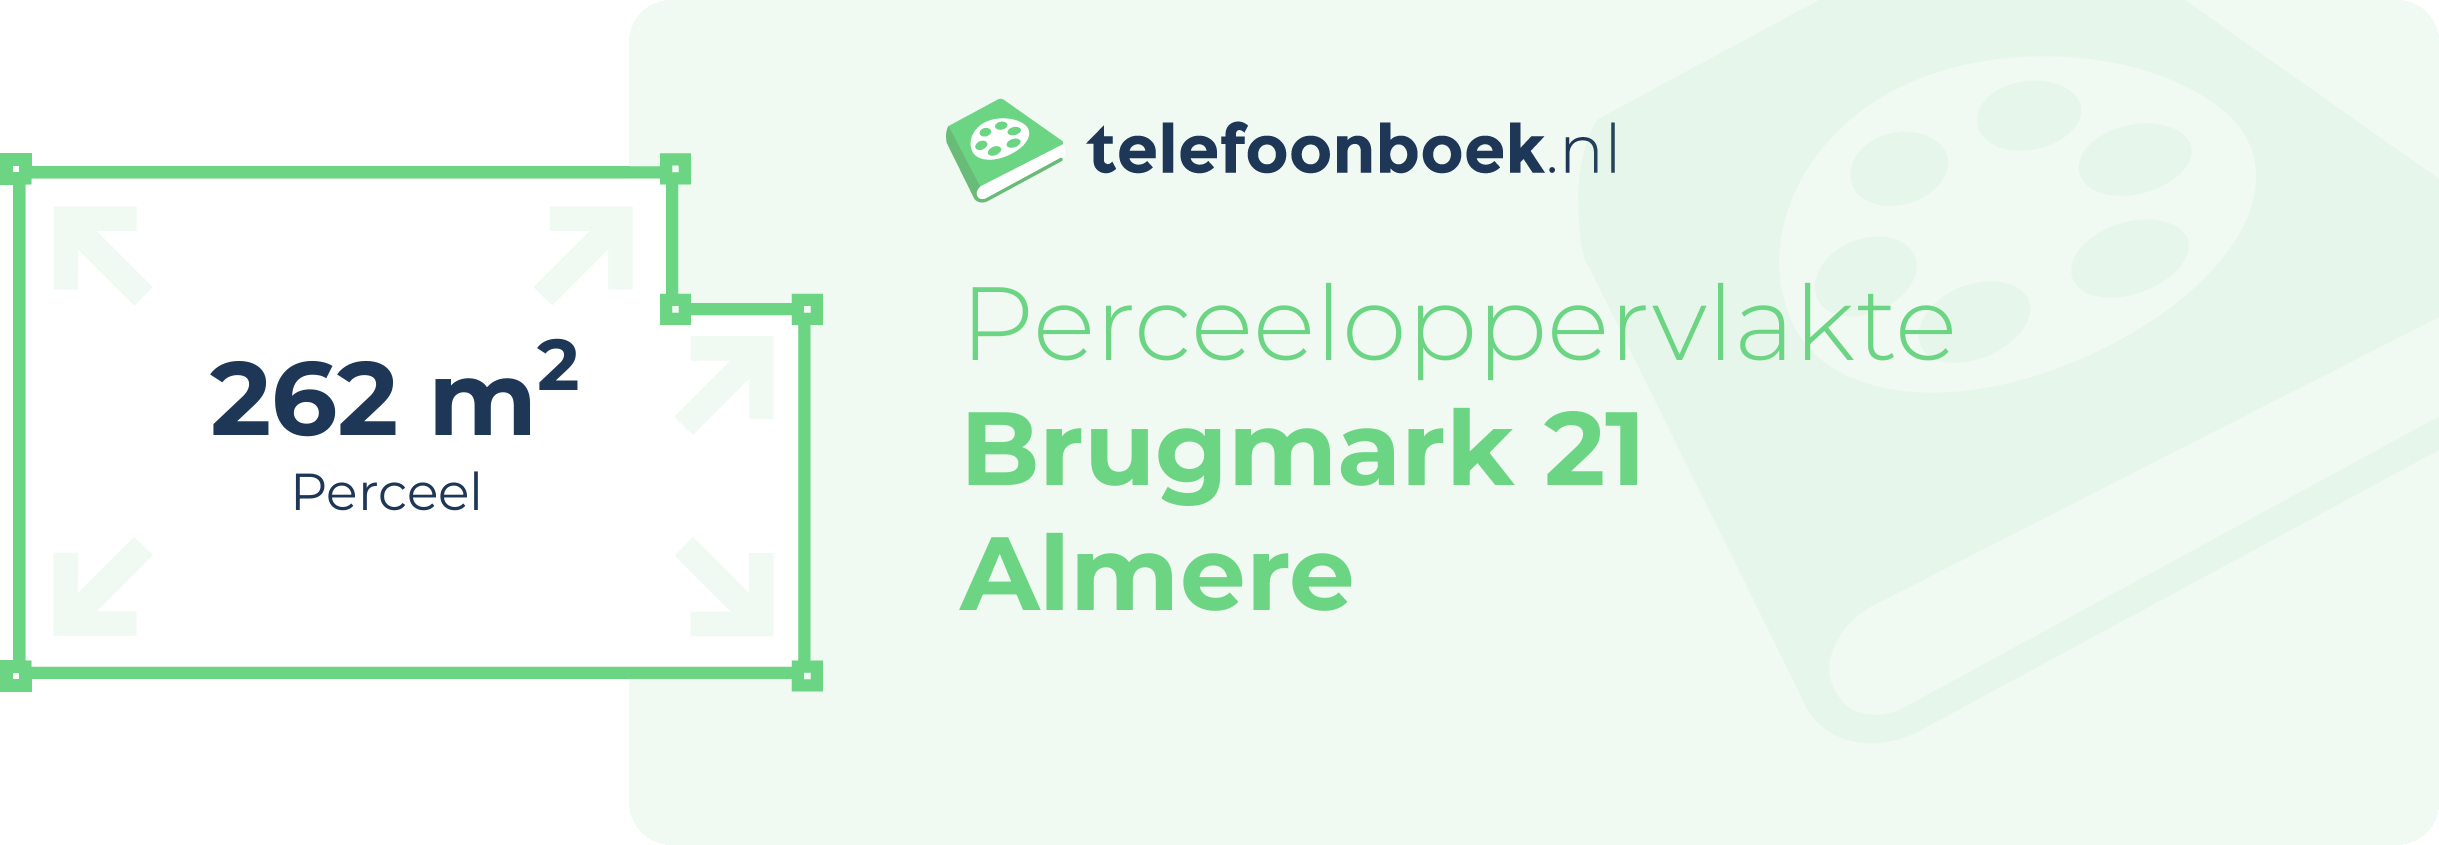 Perceeloppervlakte Brugmark 21 Almere